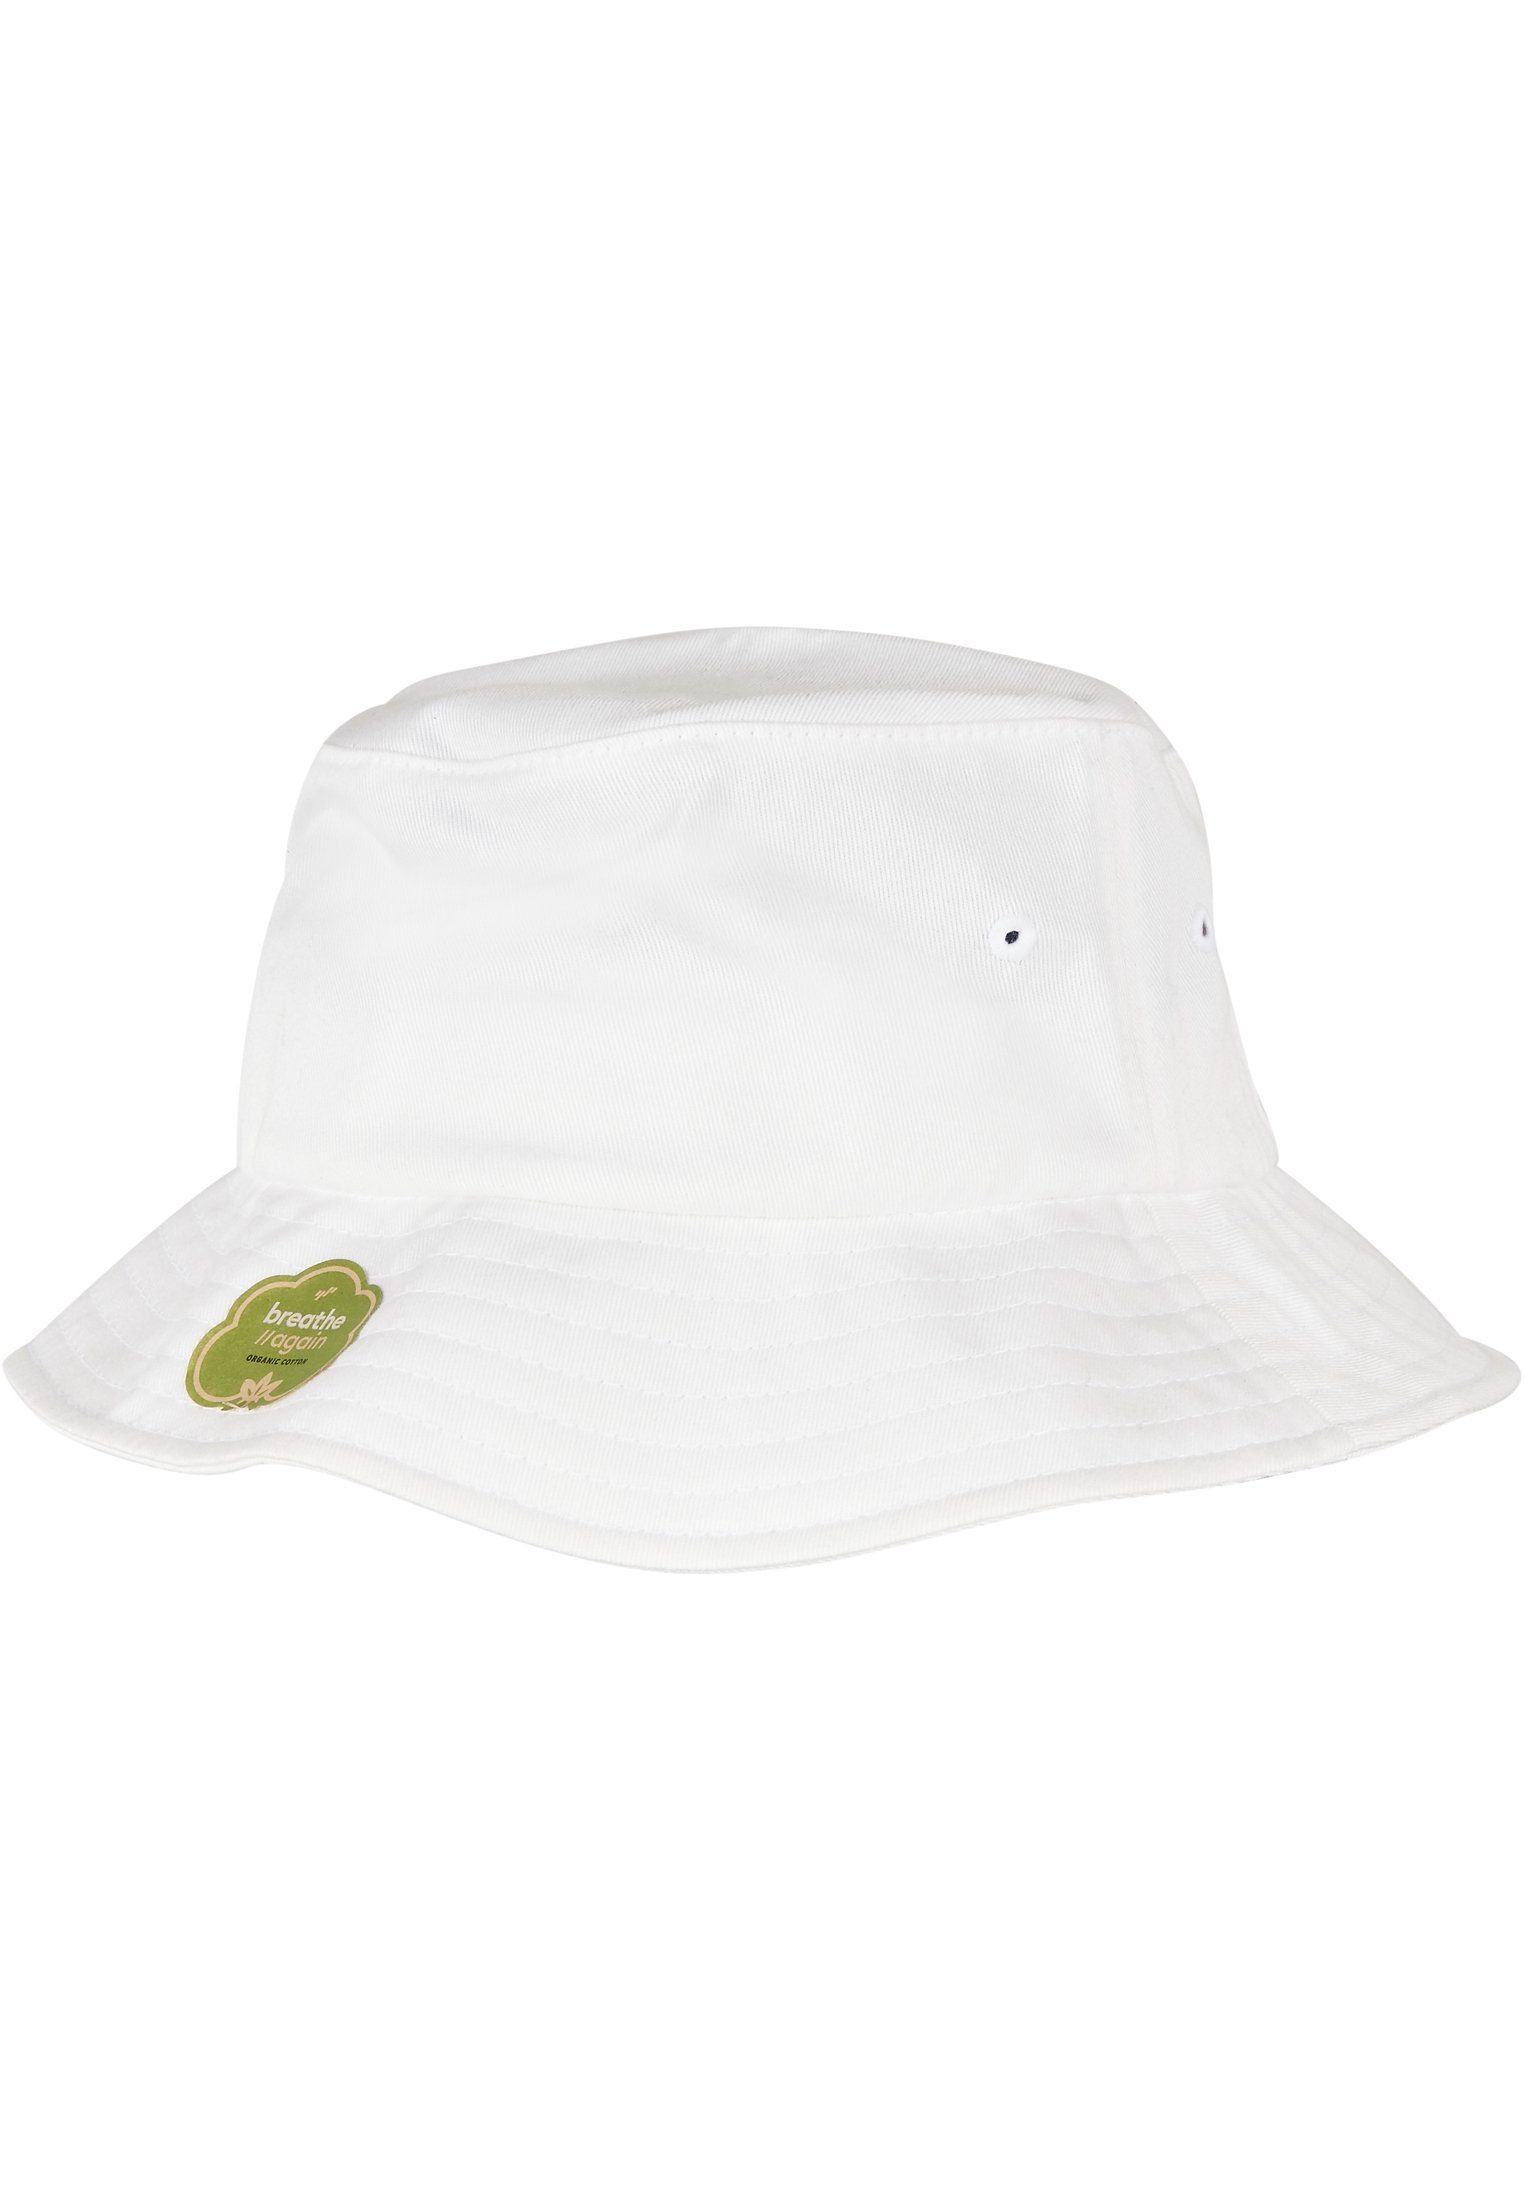 Flexfit Flex Accessoires Bucket Cotton white Organic Cap Hat